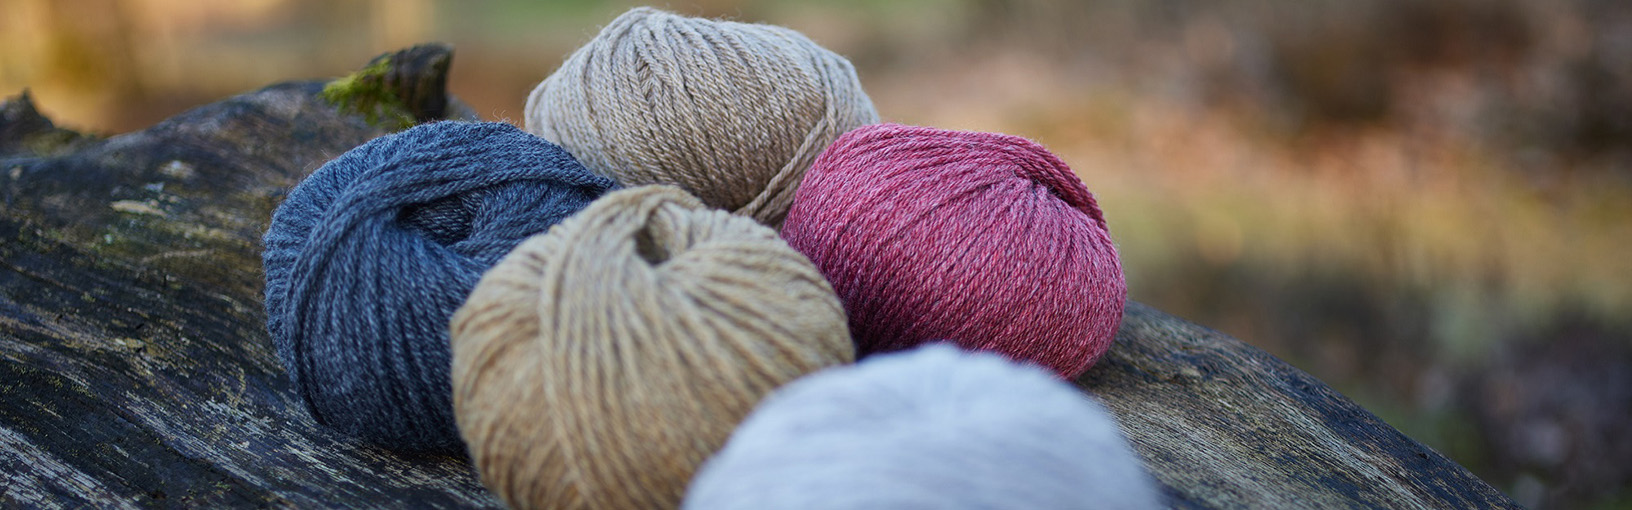 High quality yarns for knitting, crocheting & felting Lana Grossa Yarns | Landlust